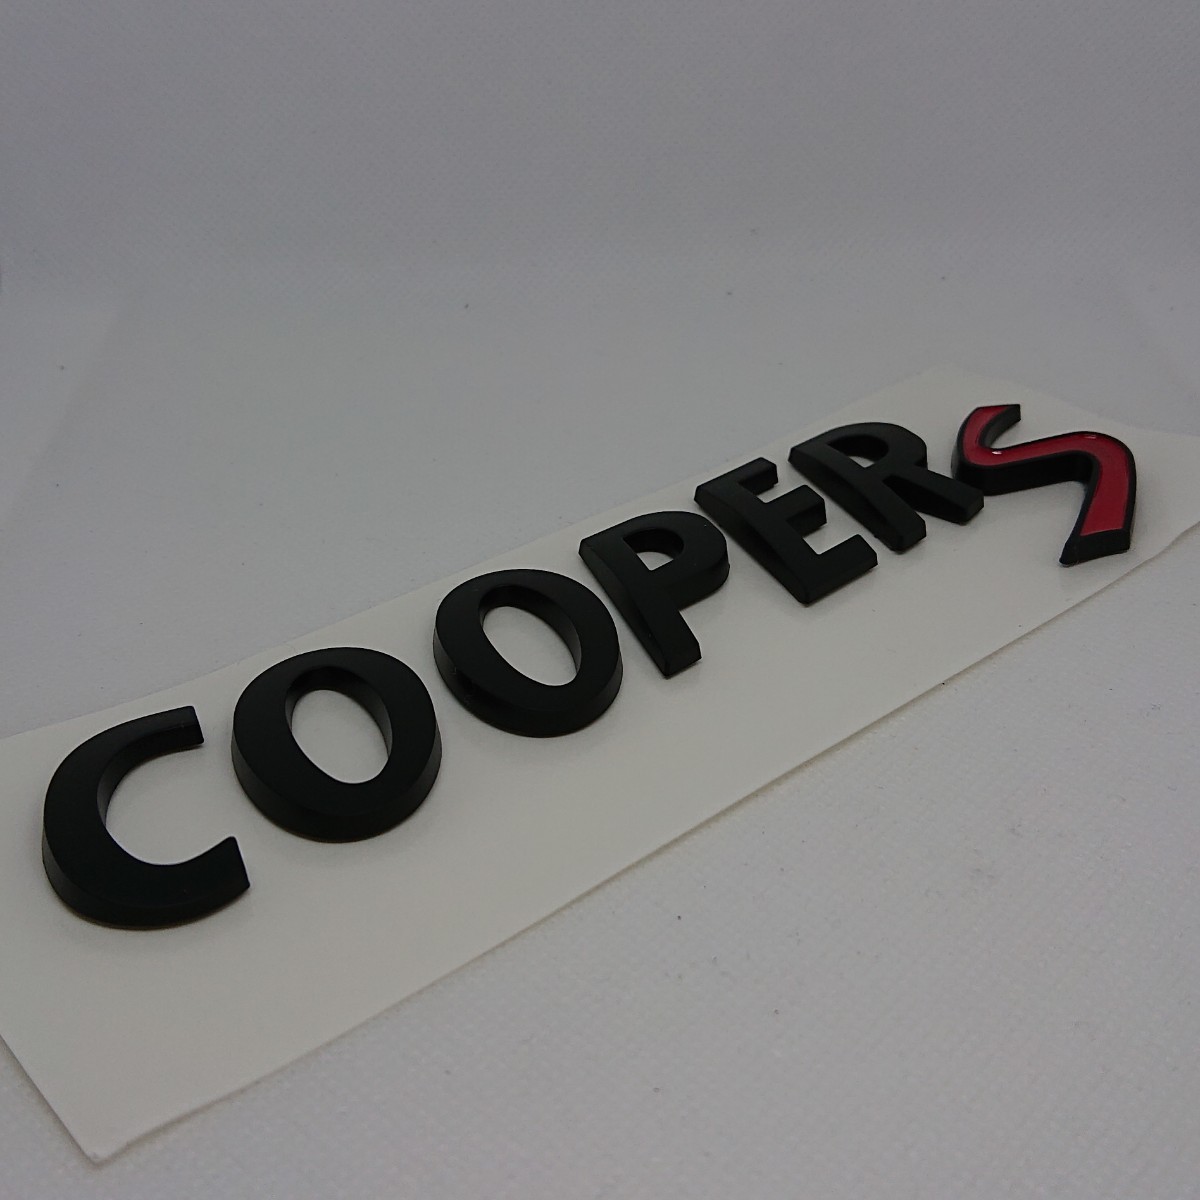 ミニ クーパー 3D ロゴ エンブレム ステッカー ブラック 送料無料 匿名配送/シール カーステッカー ワンポイント ドレスアップ COOPER S_画像2